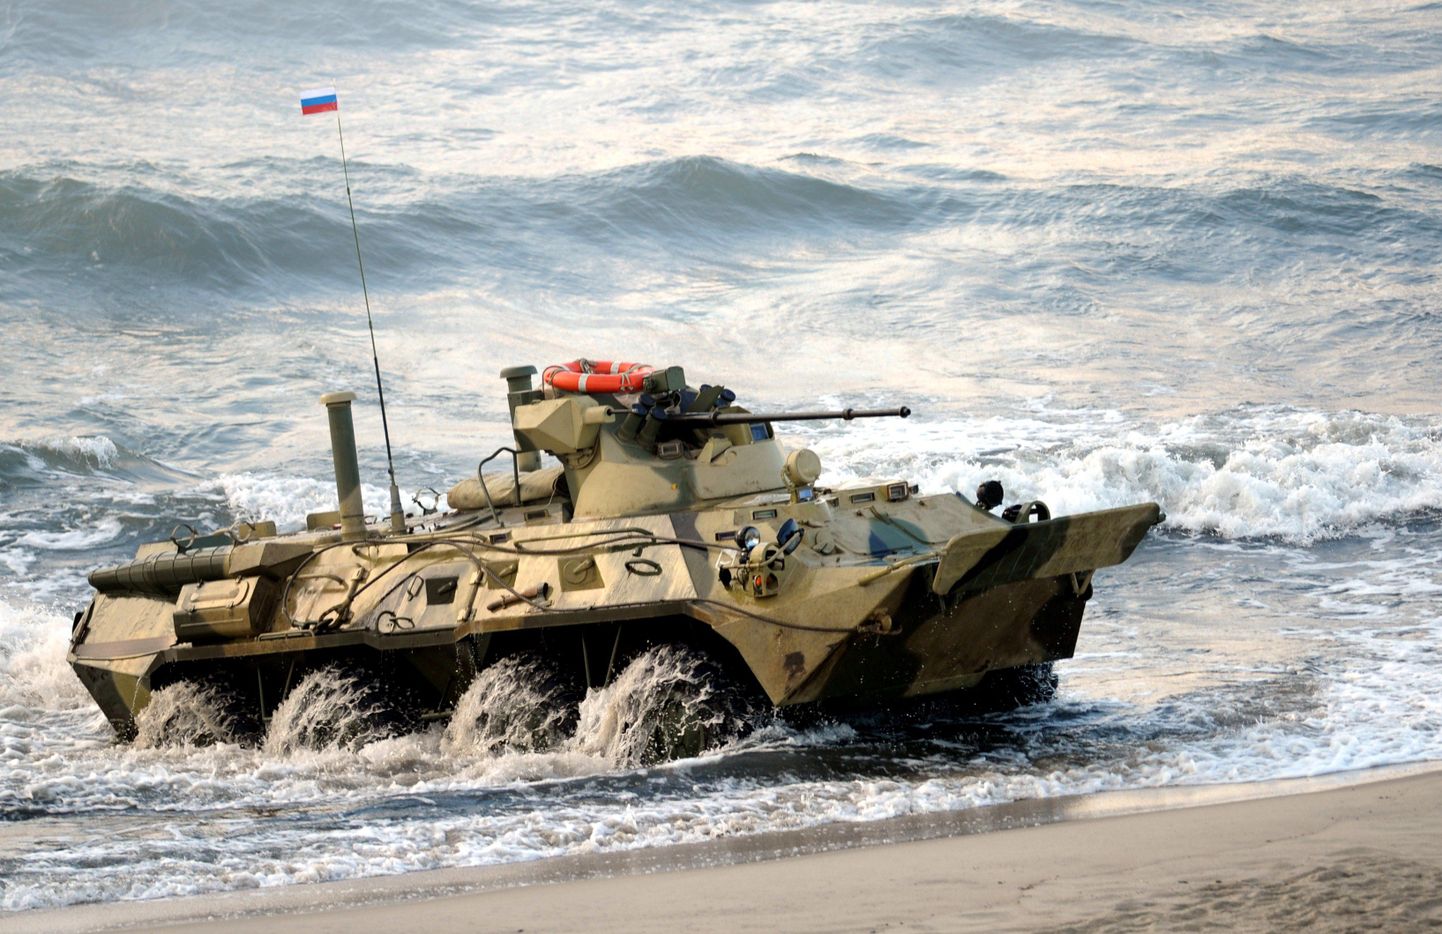 Vene armee amfiibsoomuk BTR-82A sõidab Kaliningradi rannal.